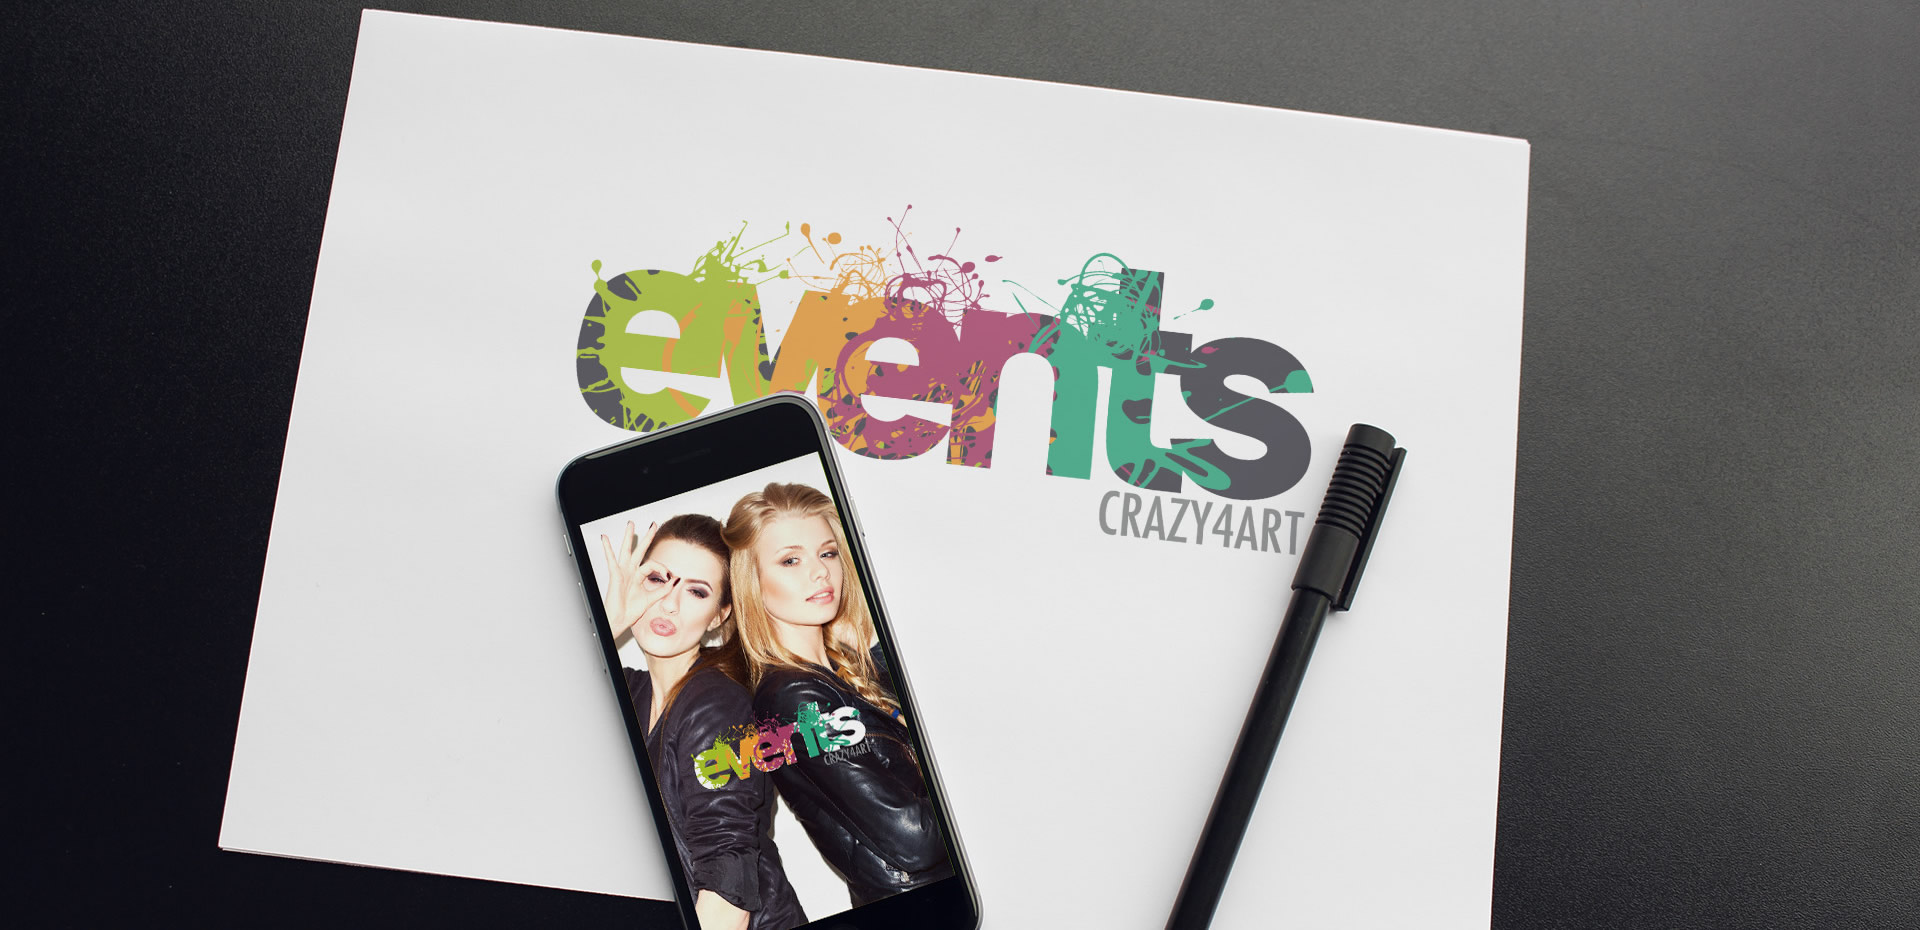 Events Crazy4Art Creazione Logo - Patrizio Rossi Web and Graphic Designer - Portfolio web e grafica